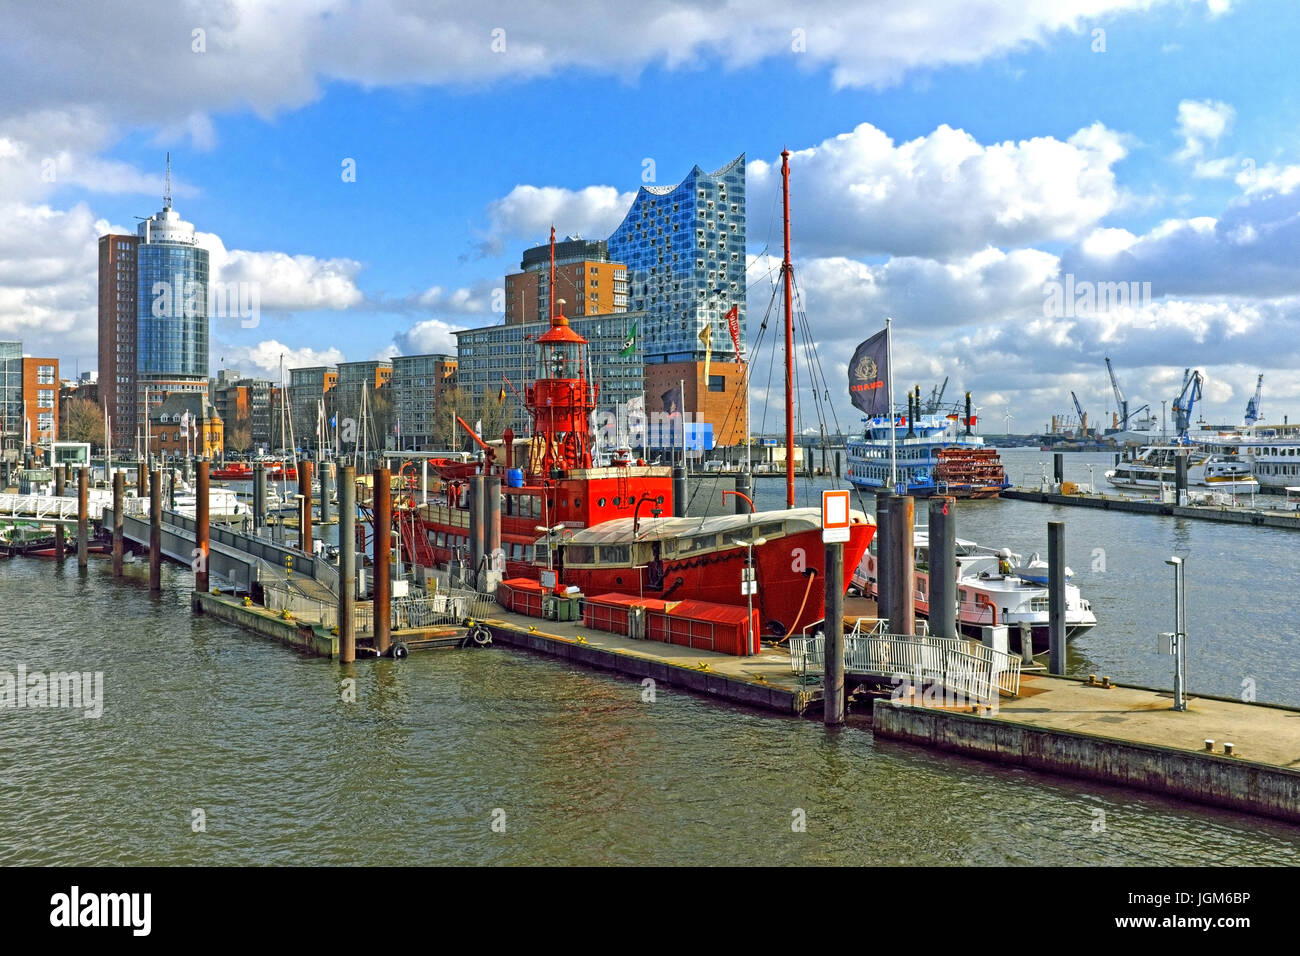 Der historische Hafen Hamburg an der Elbe in Hamburg, Deutschland, ist der größte Seehafen in Deutschland und der zweitgrößte in Europa. Stockfoto